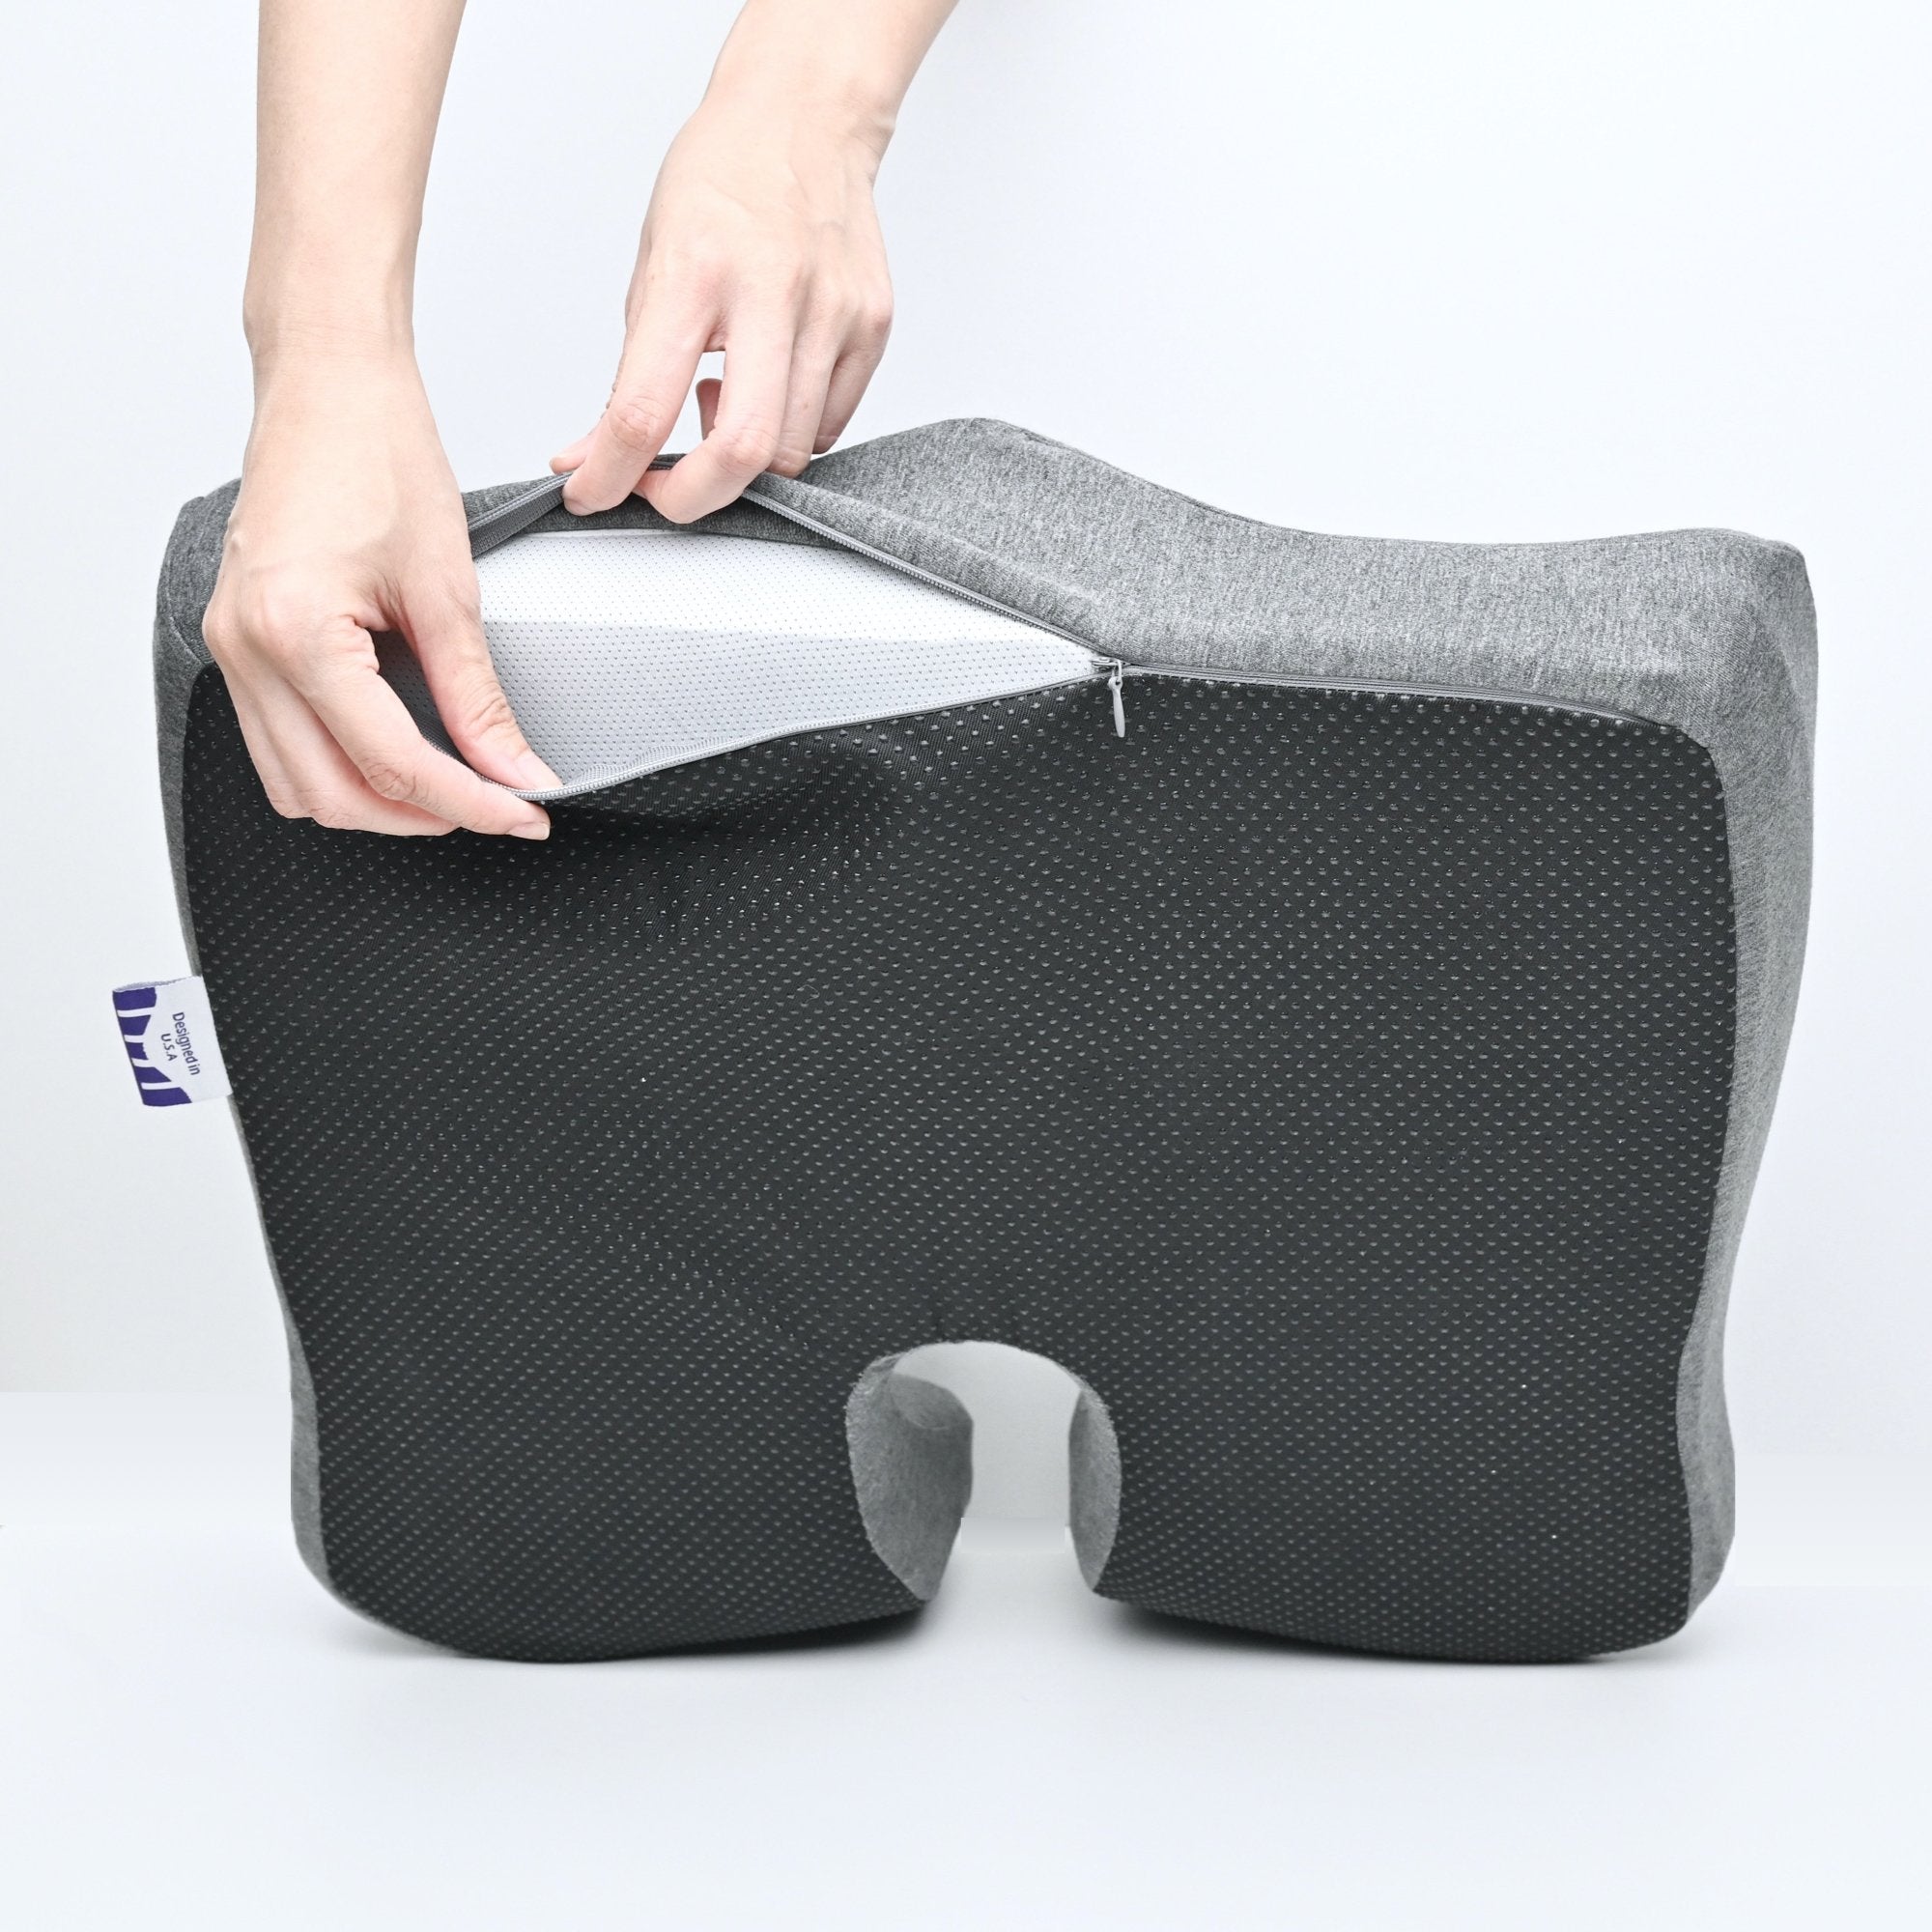 Cushion Lab Foam & Polyester Seat Cushion - 18 x 15.5 - Grey